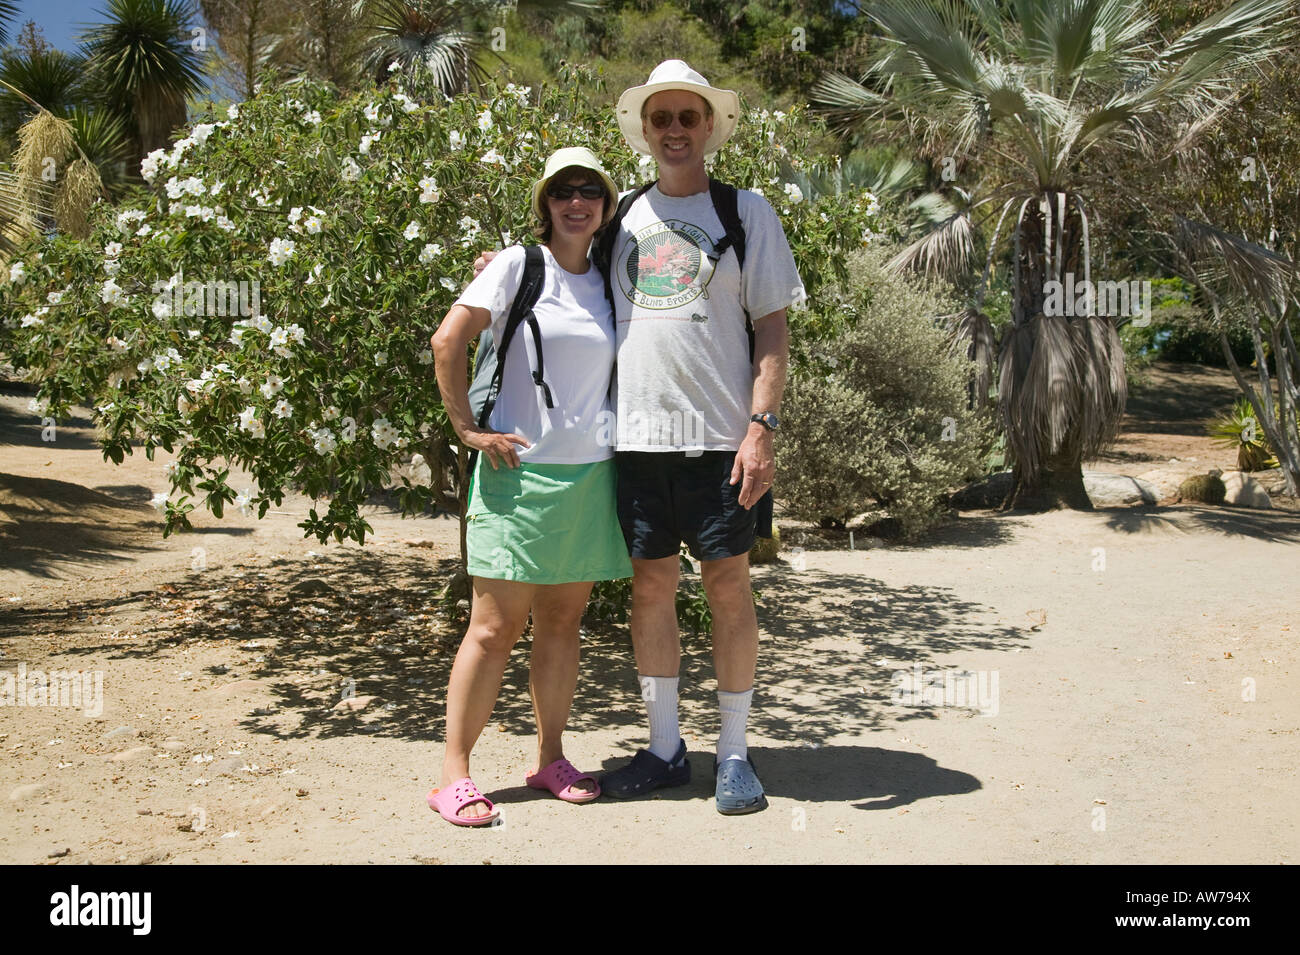 Couple in Desert Garden Balboa Park, San Diego, California, USA Stock Photo